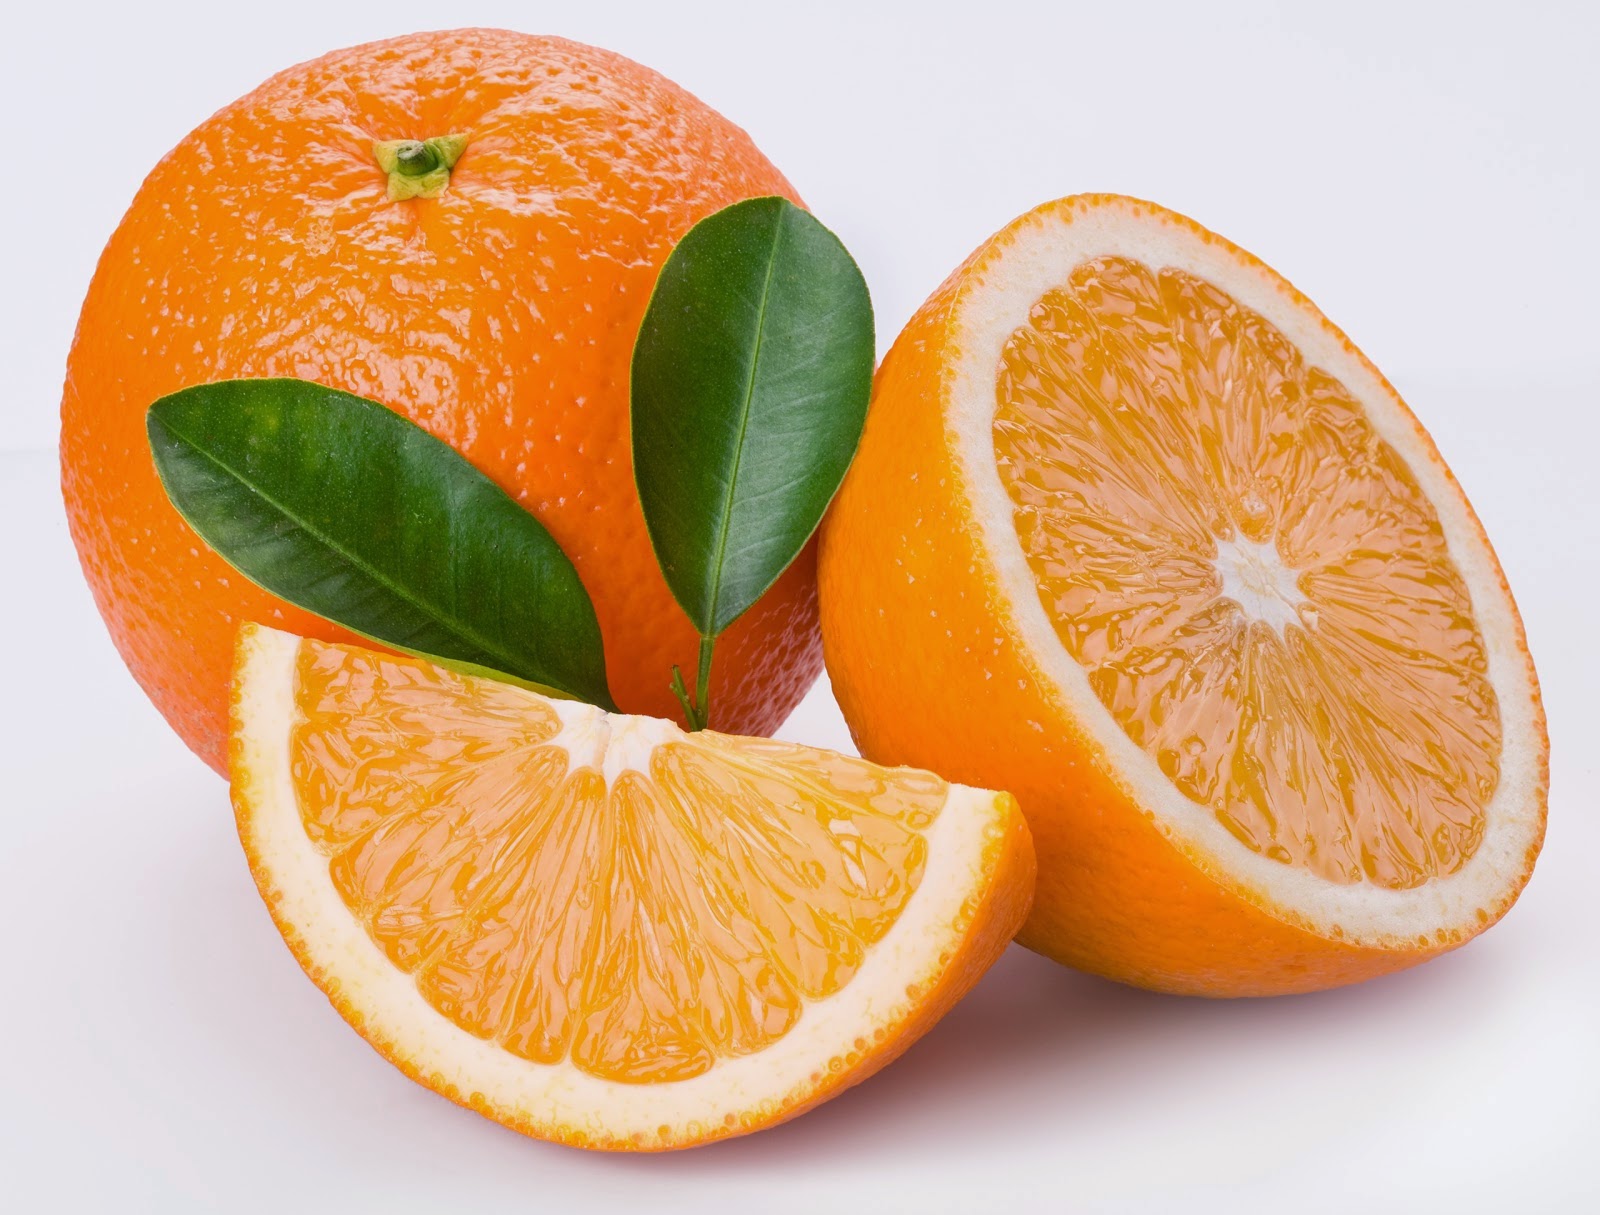 Calorias naranja entera